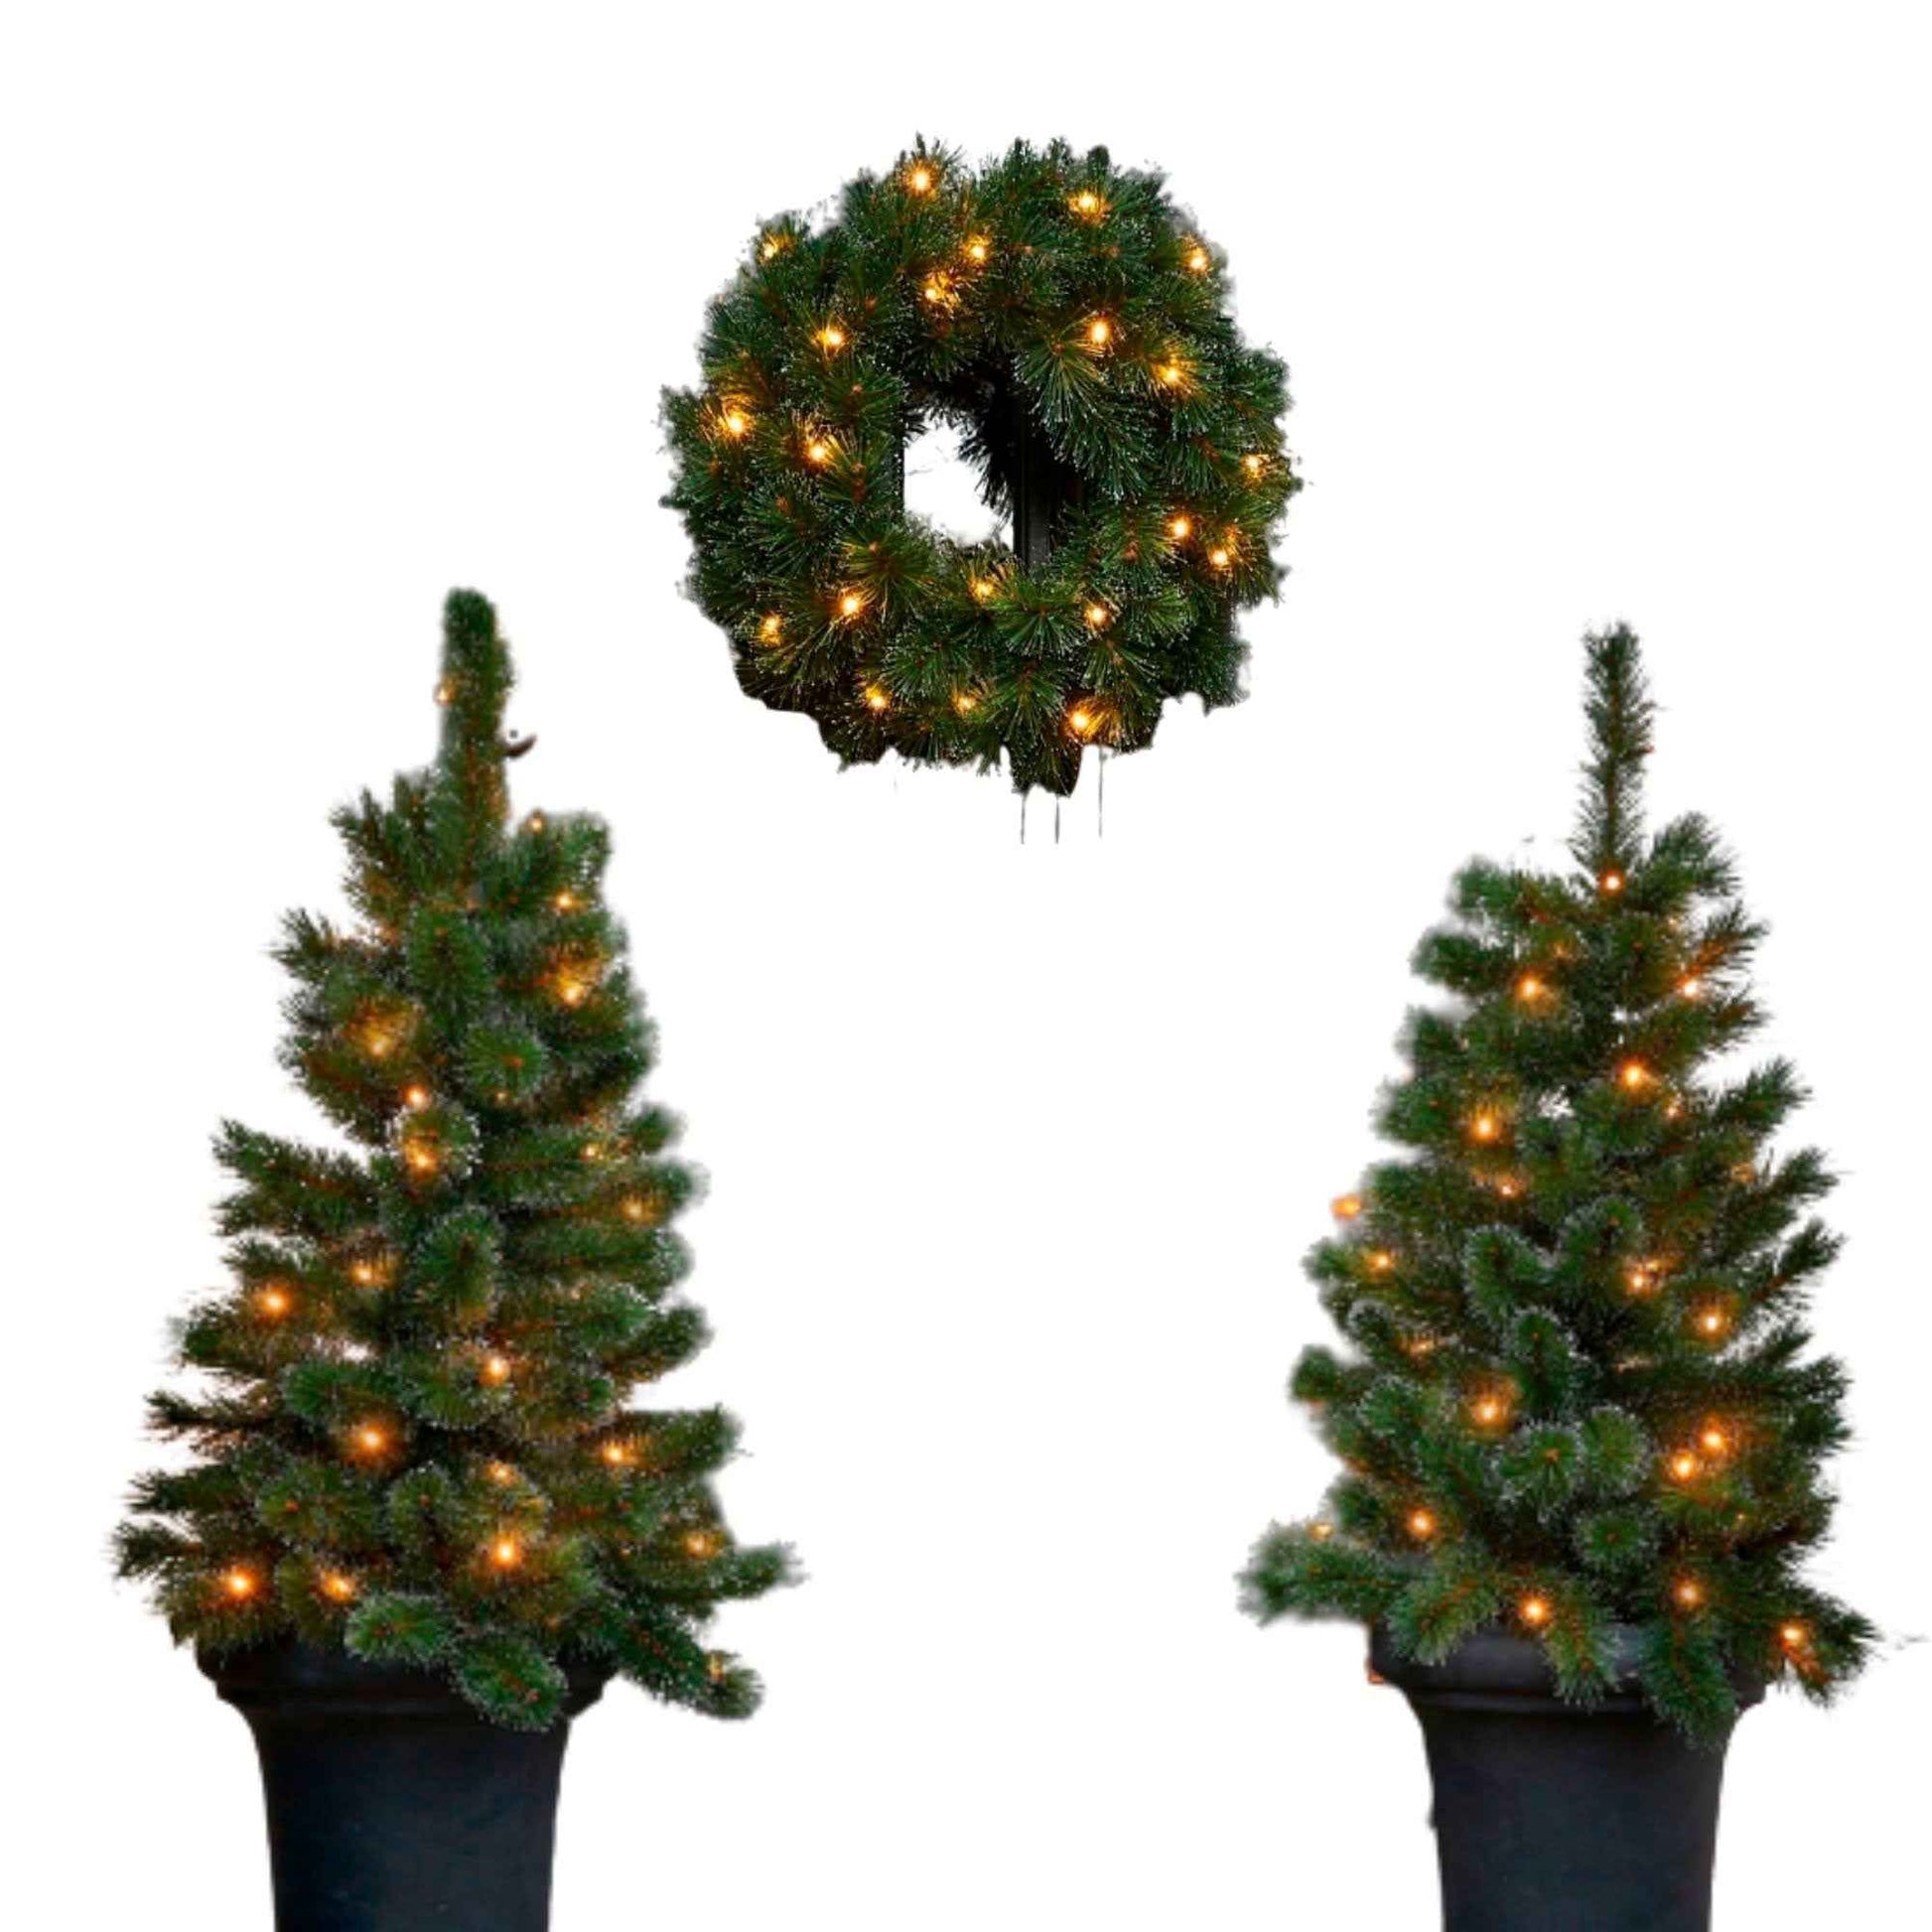 Black Box 2x Schneebedeckter künstlicher Weihnachtsbaum + 1x Adventskranz 'Glendon' inkl. LED-Beleuchtung - Kunstweihnachtsbäume